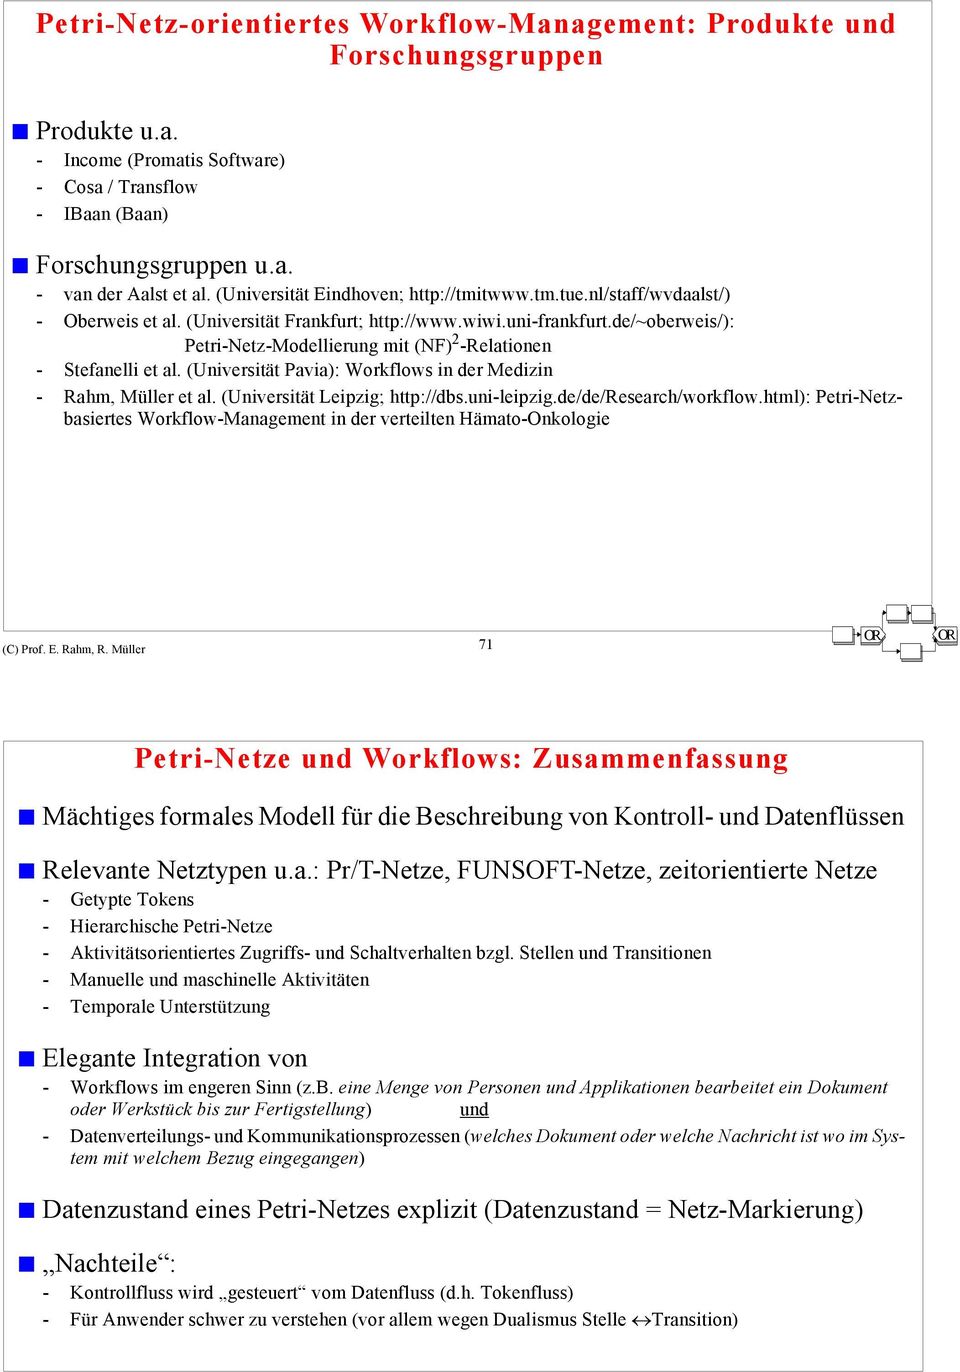 de/~oberweis/): Petri-Netz-Modellierung mit (NF) 2 -Relationen - Stefanelli et al. (Universität Pavia): Workflows in der Medizin - Rahm, Müller et al. (Universität Leipzig; http://dbs.uni-leipzig.